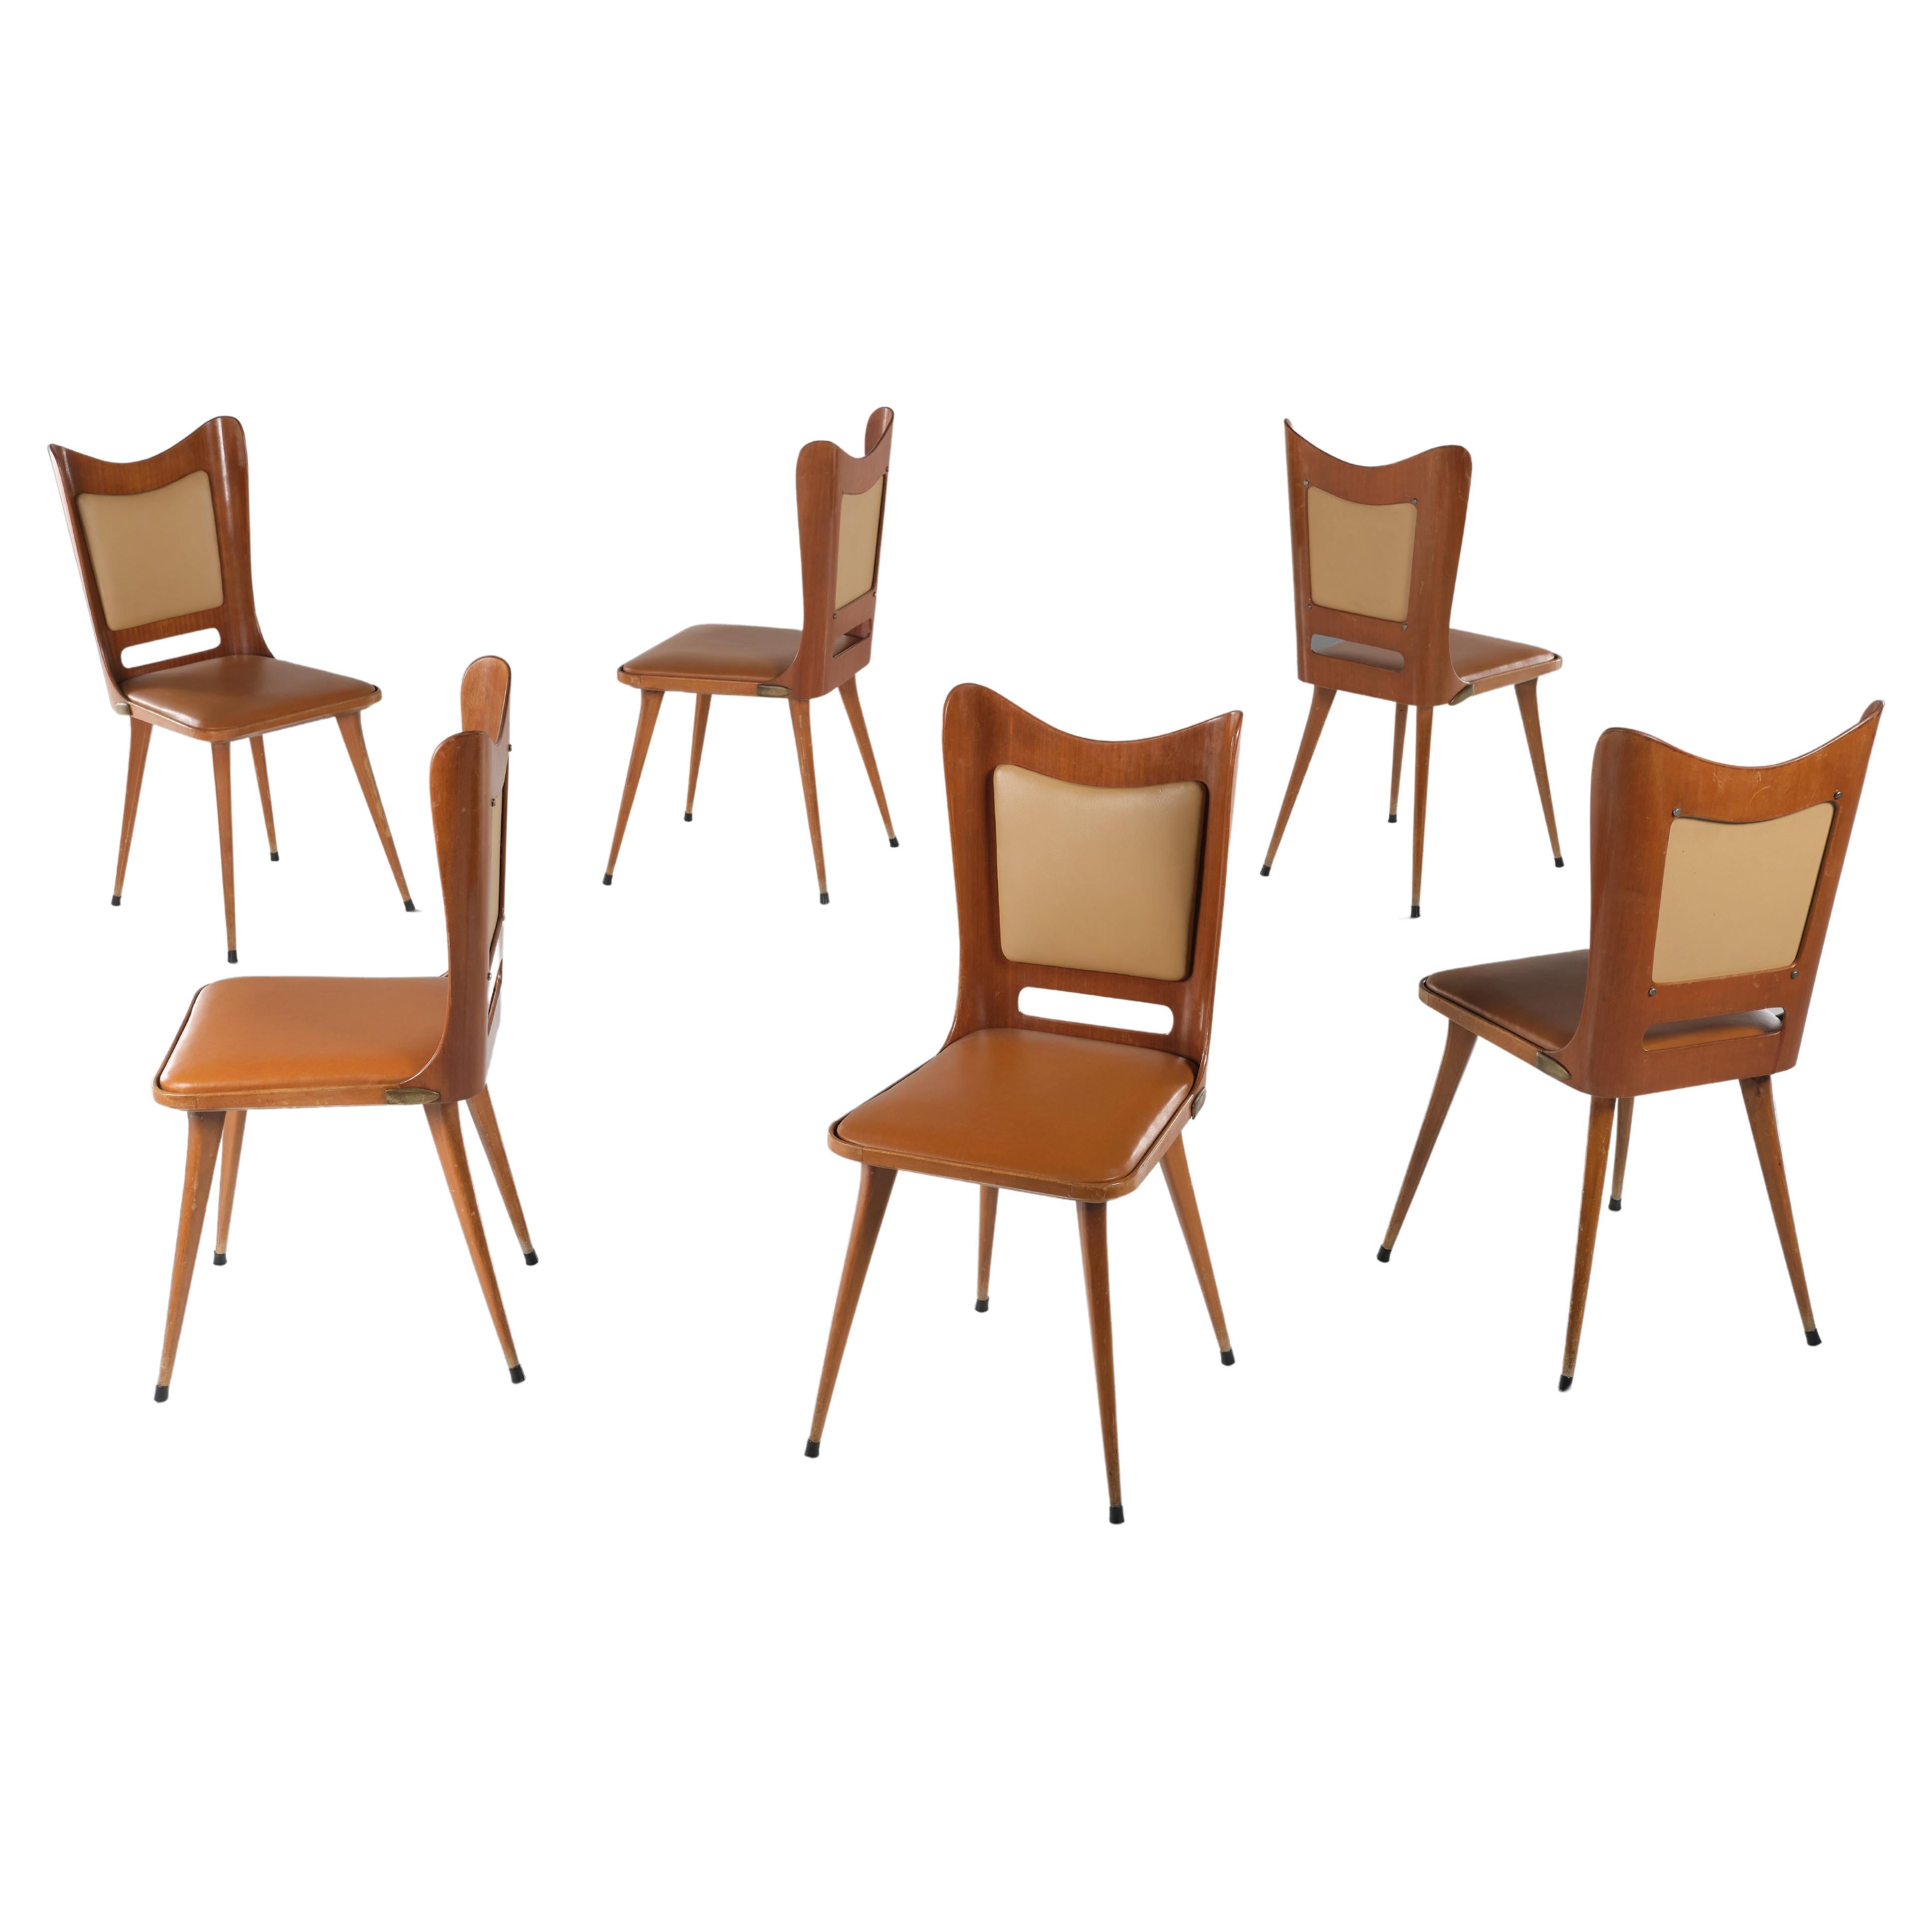 Carlo Ratti - Ensemble de 6 chaises en contreplaqué de bois et faux cuir - Design italien des années 1950